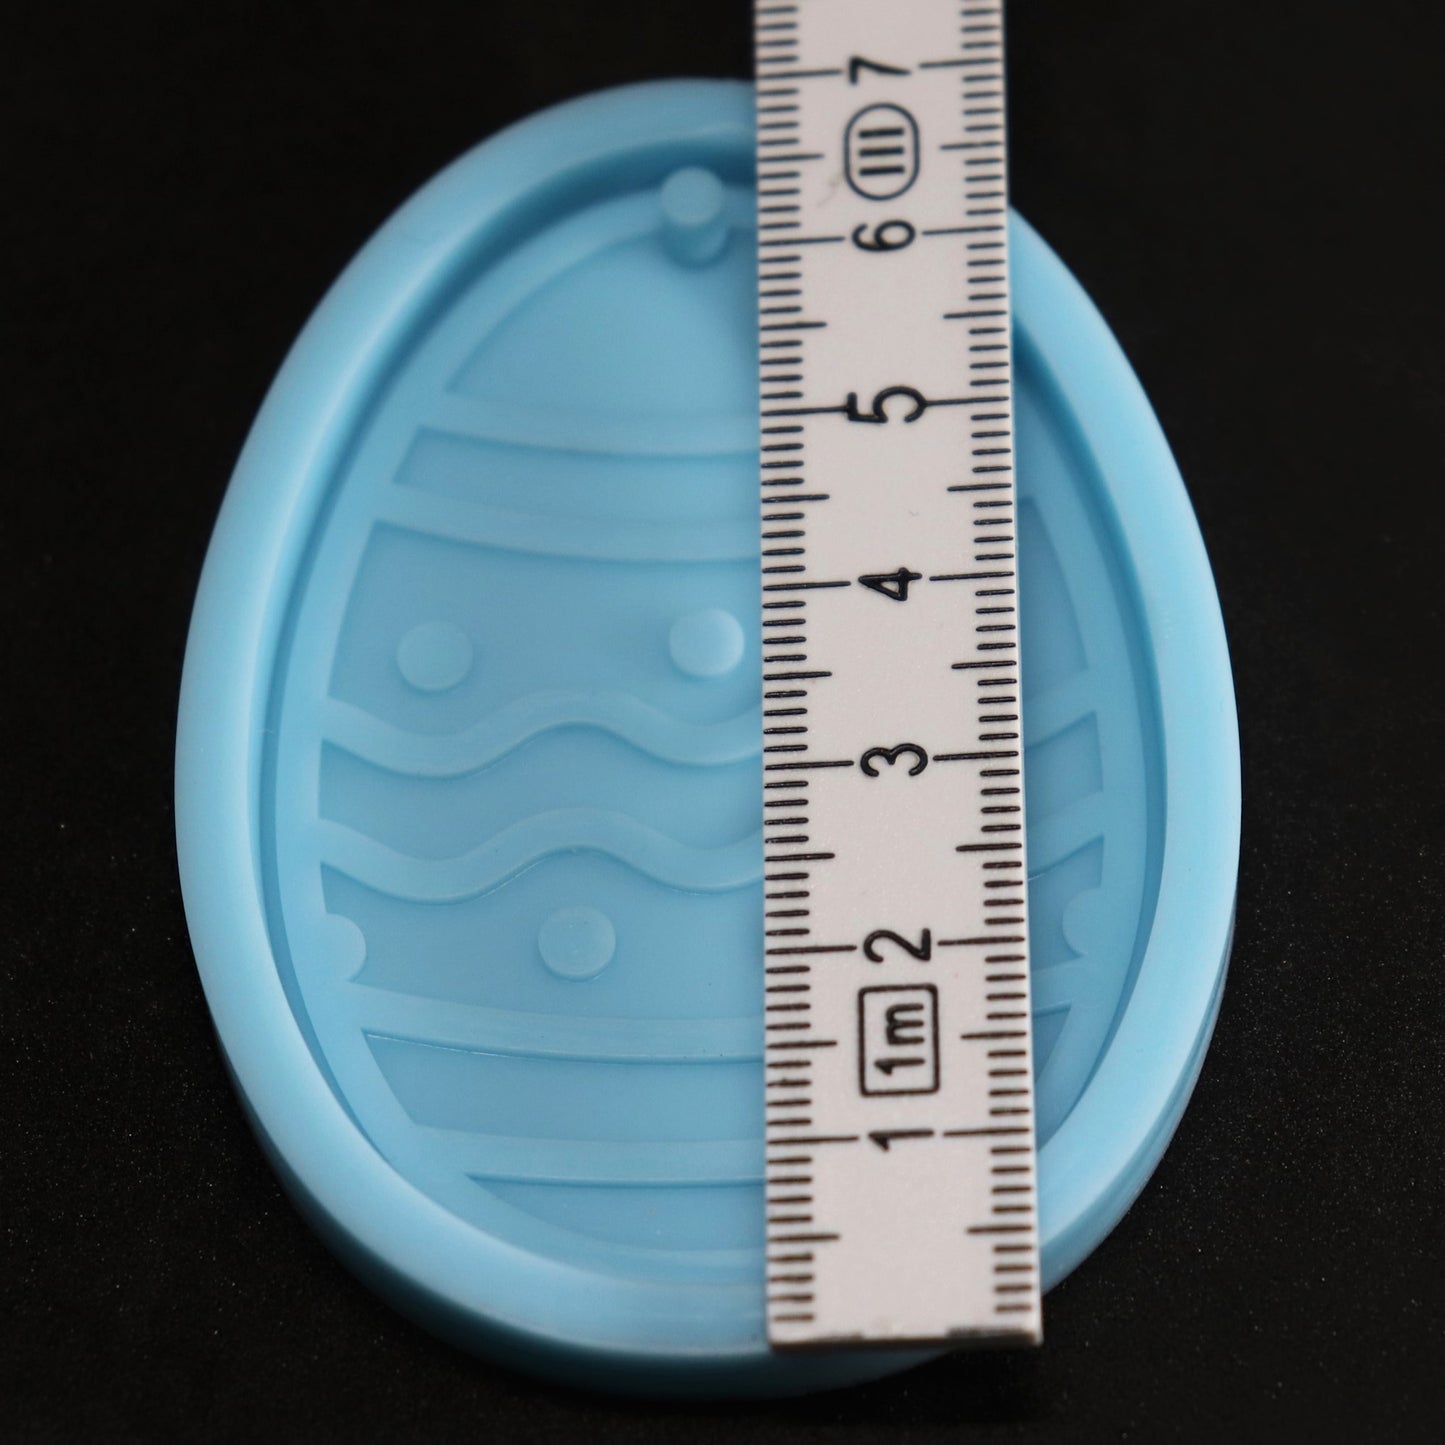 Silikonform Oster Ei Anhänger Gießform Ostern für Raysin, Epoxidharz ca. 6,5 cm